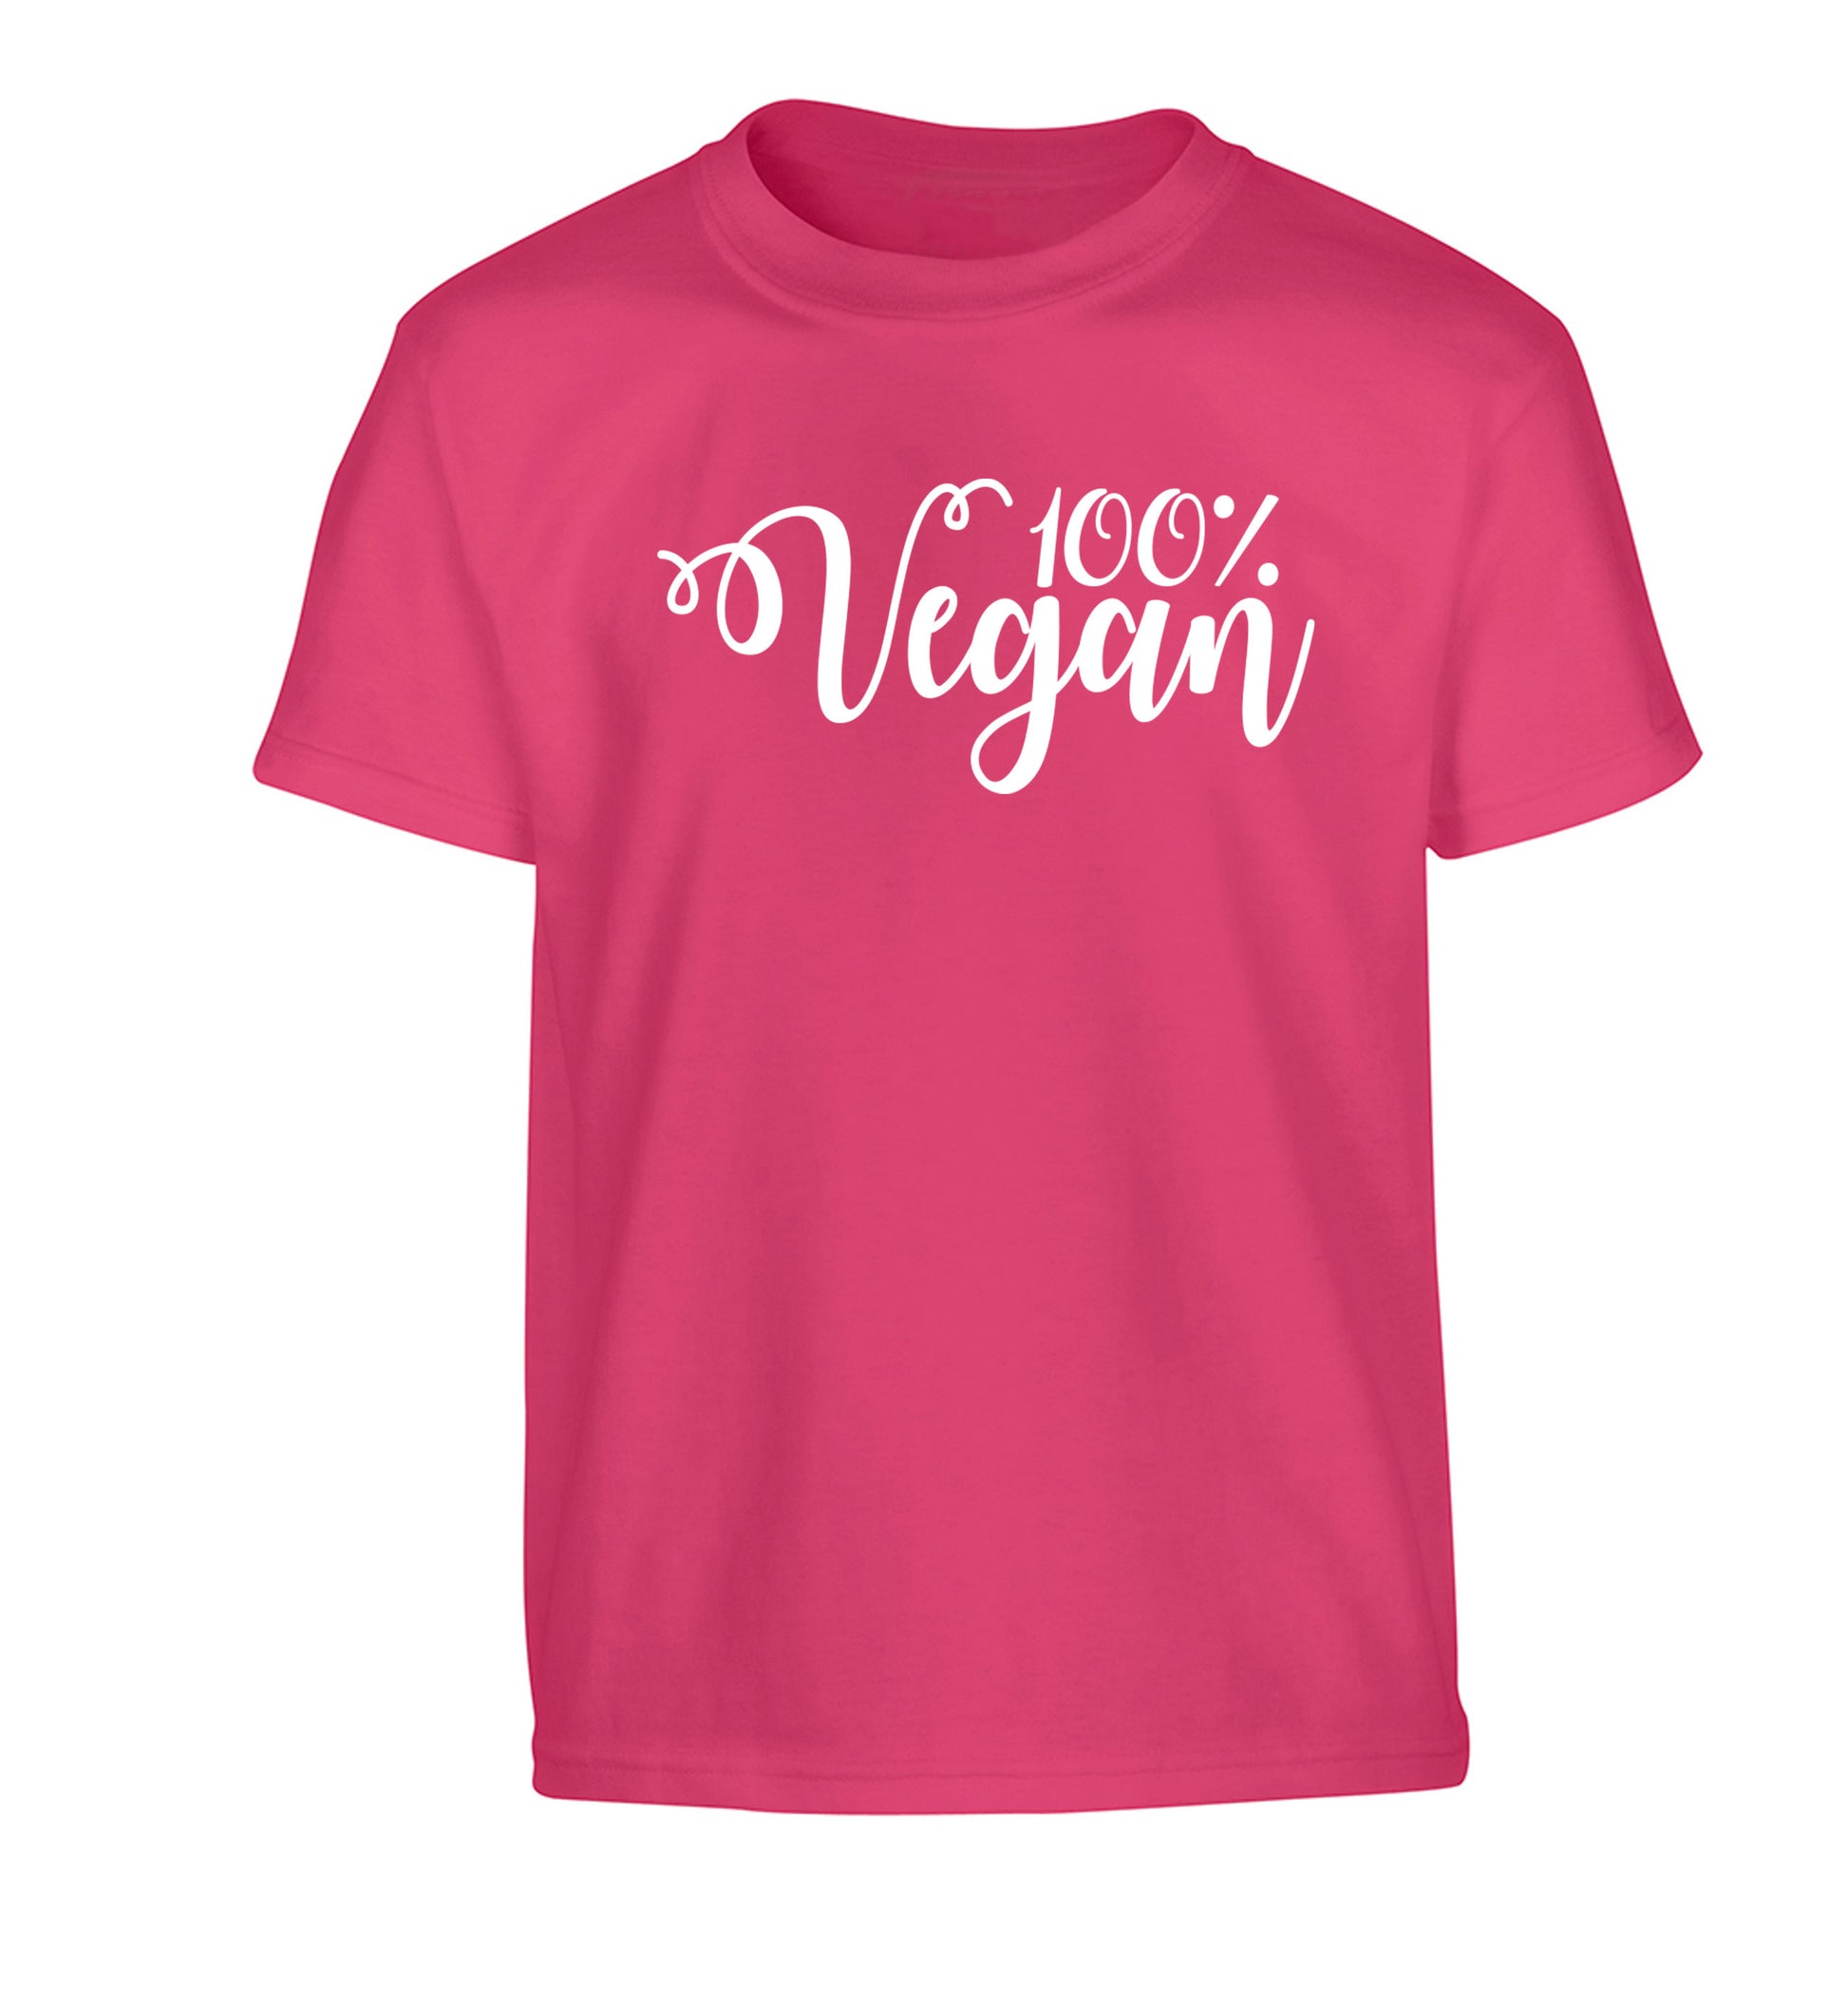 100% Vegan Children's pink Tshirt 12-14 Years